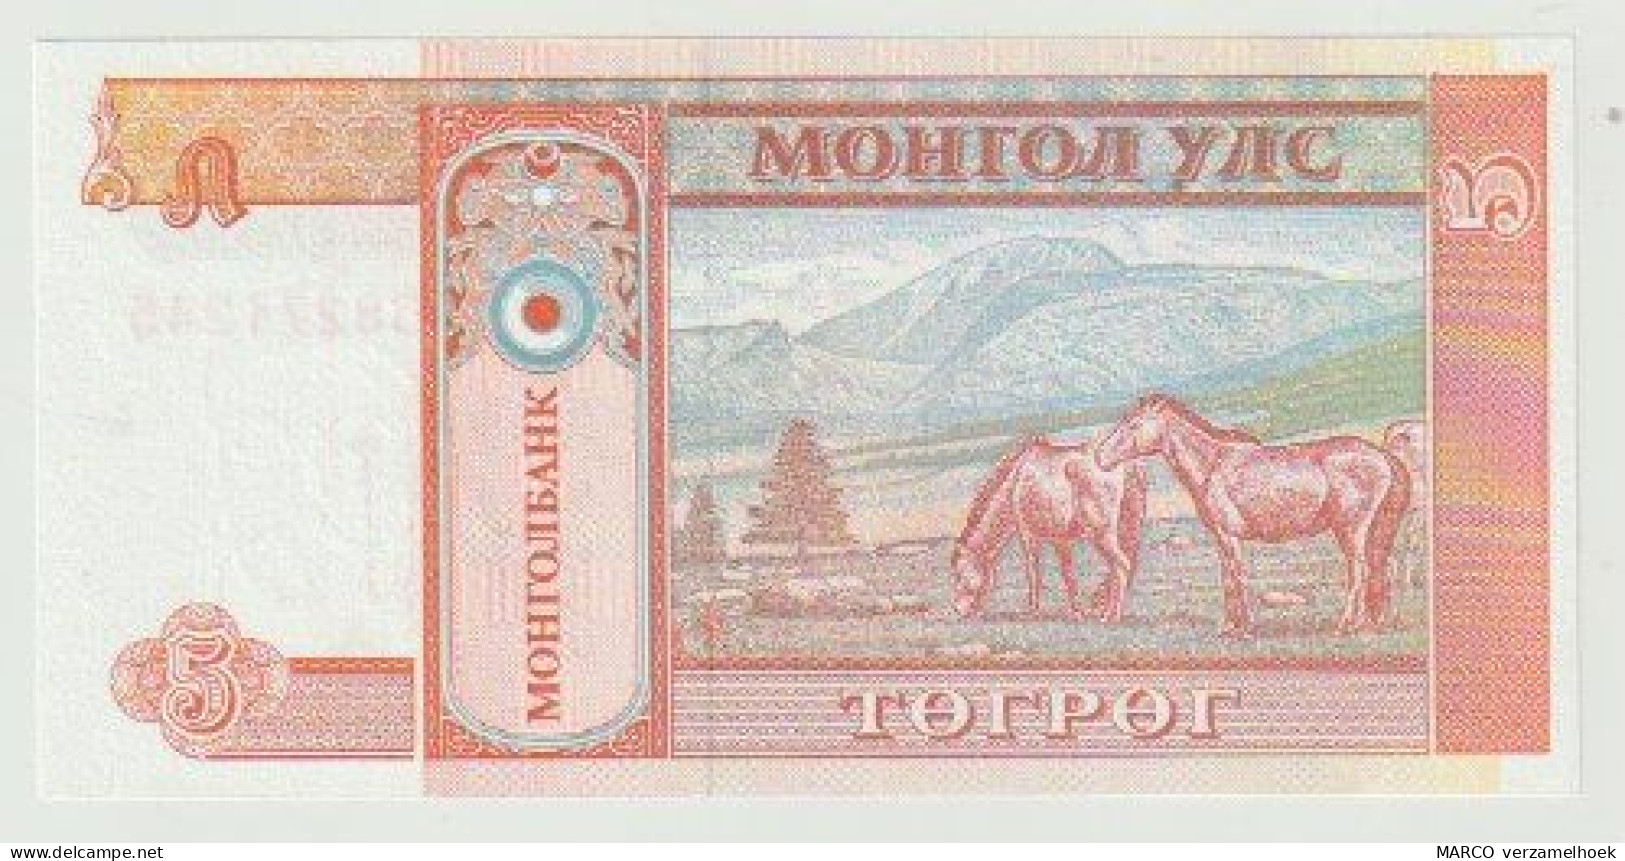 Banknote Mongolia-mongolie 5 Tugrik 1993 UNC - Mongolie